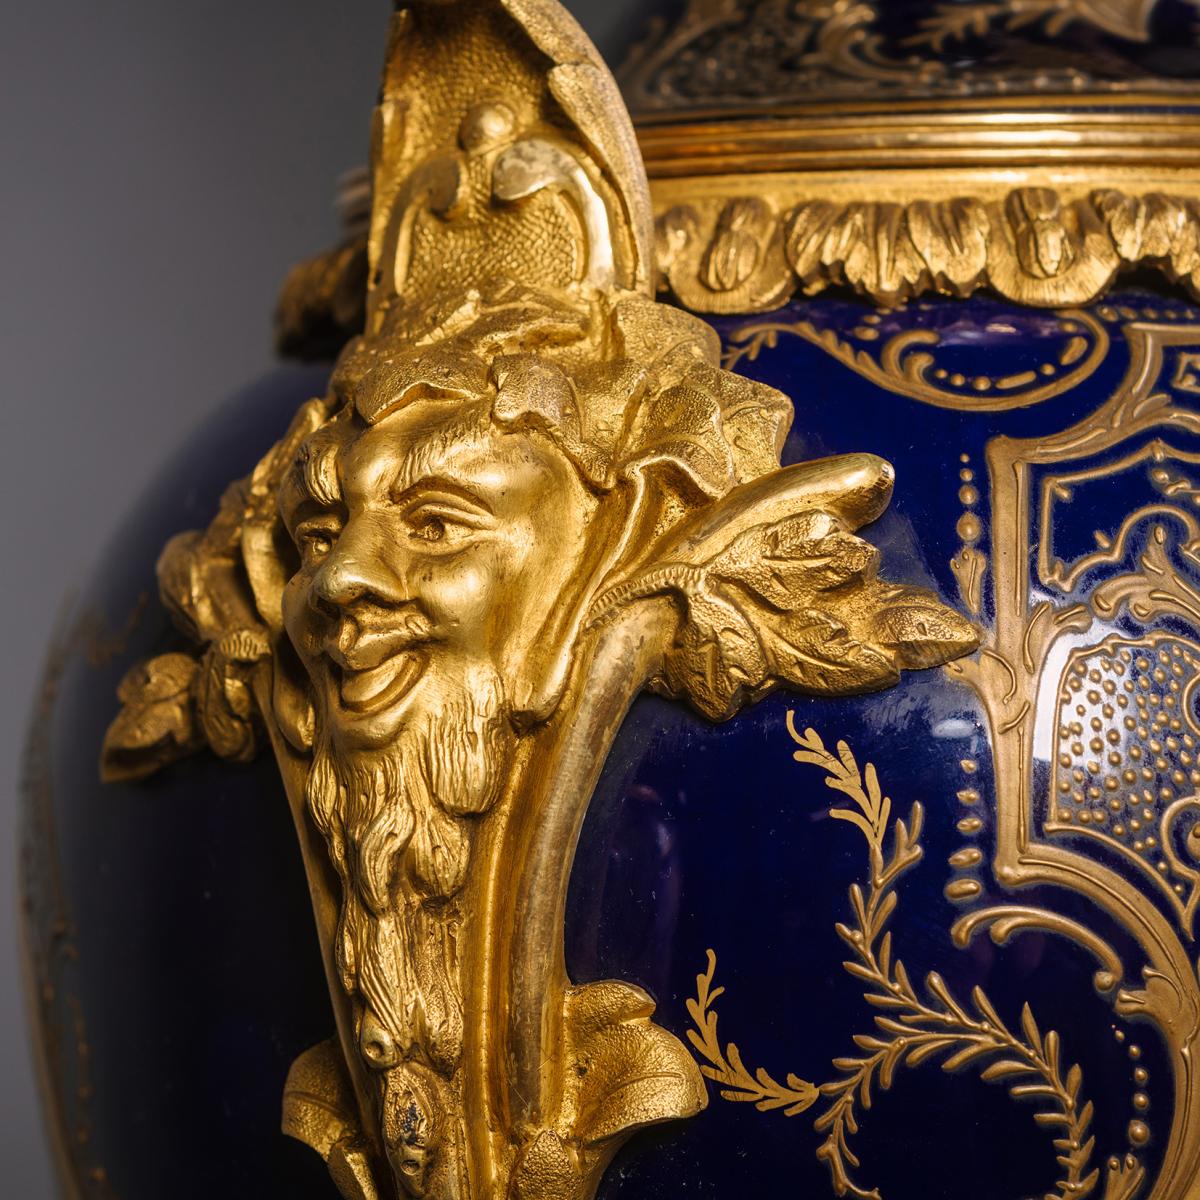 Sèvres Style Porcelain Vases